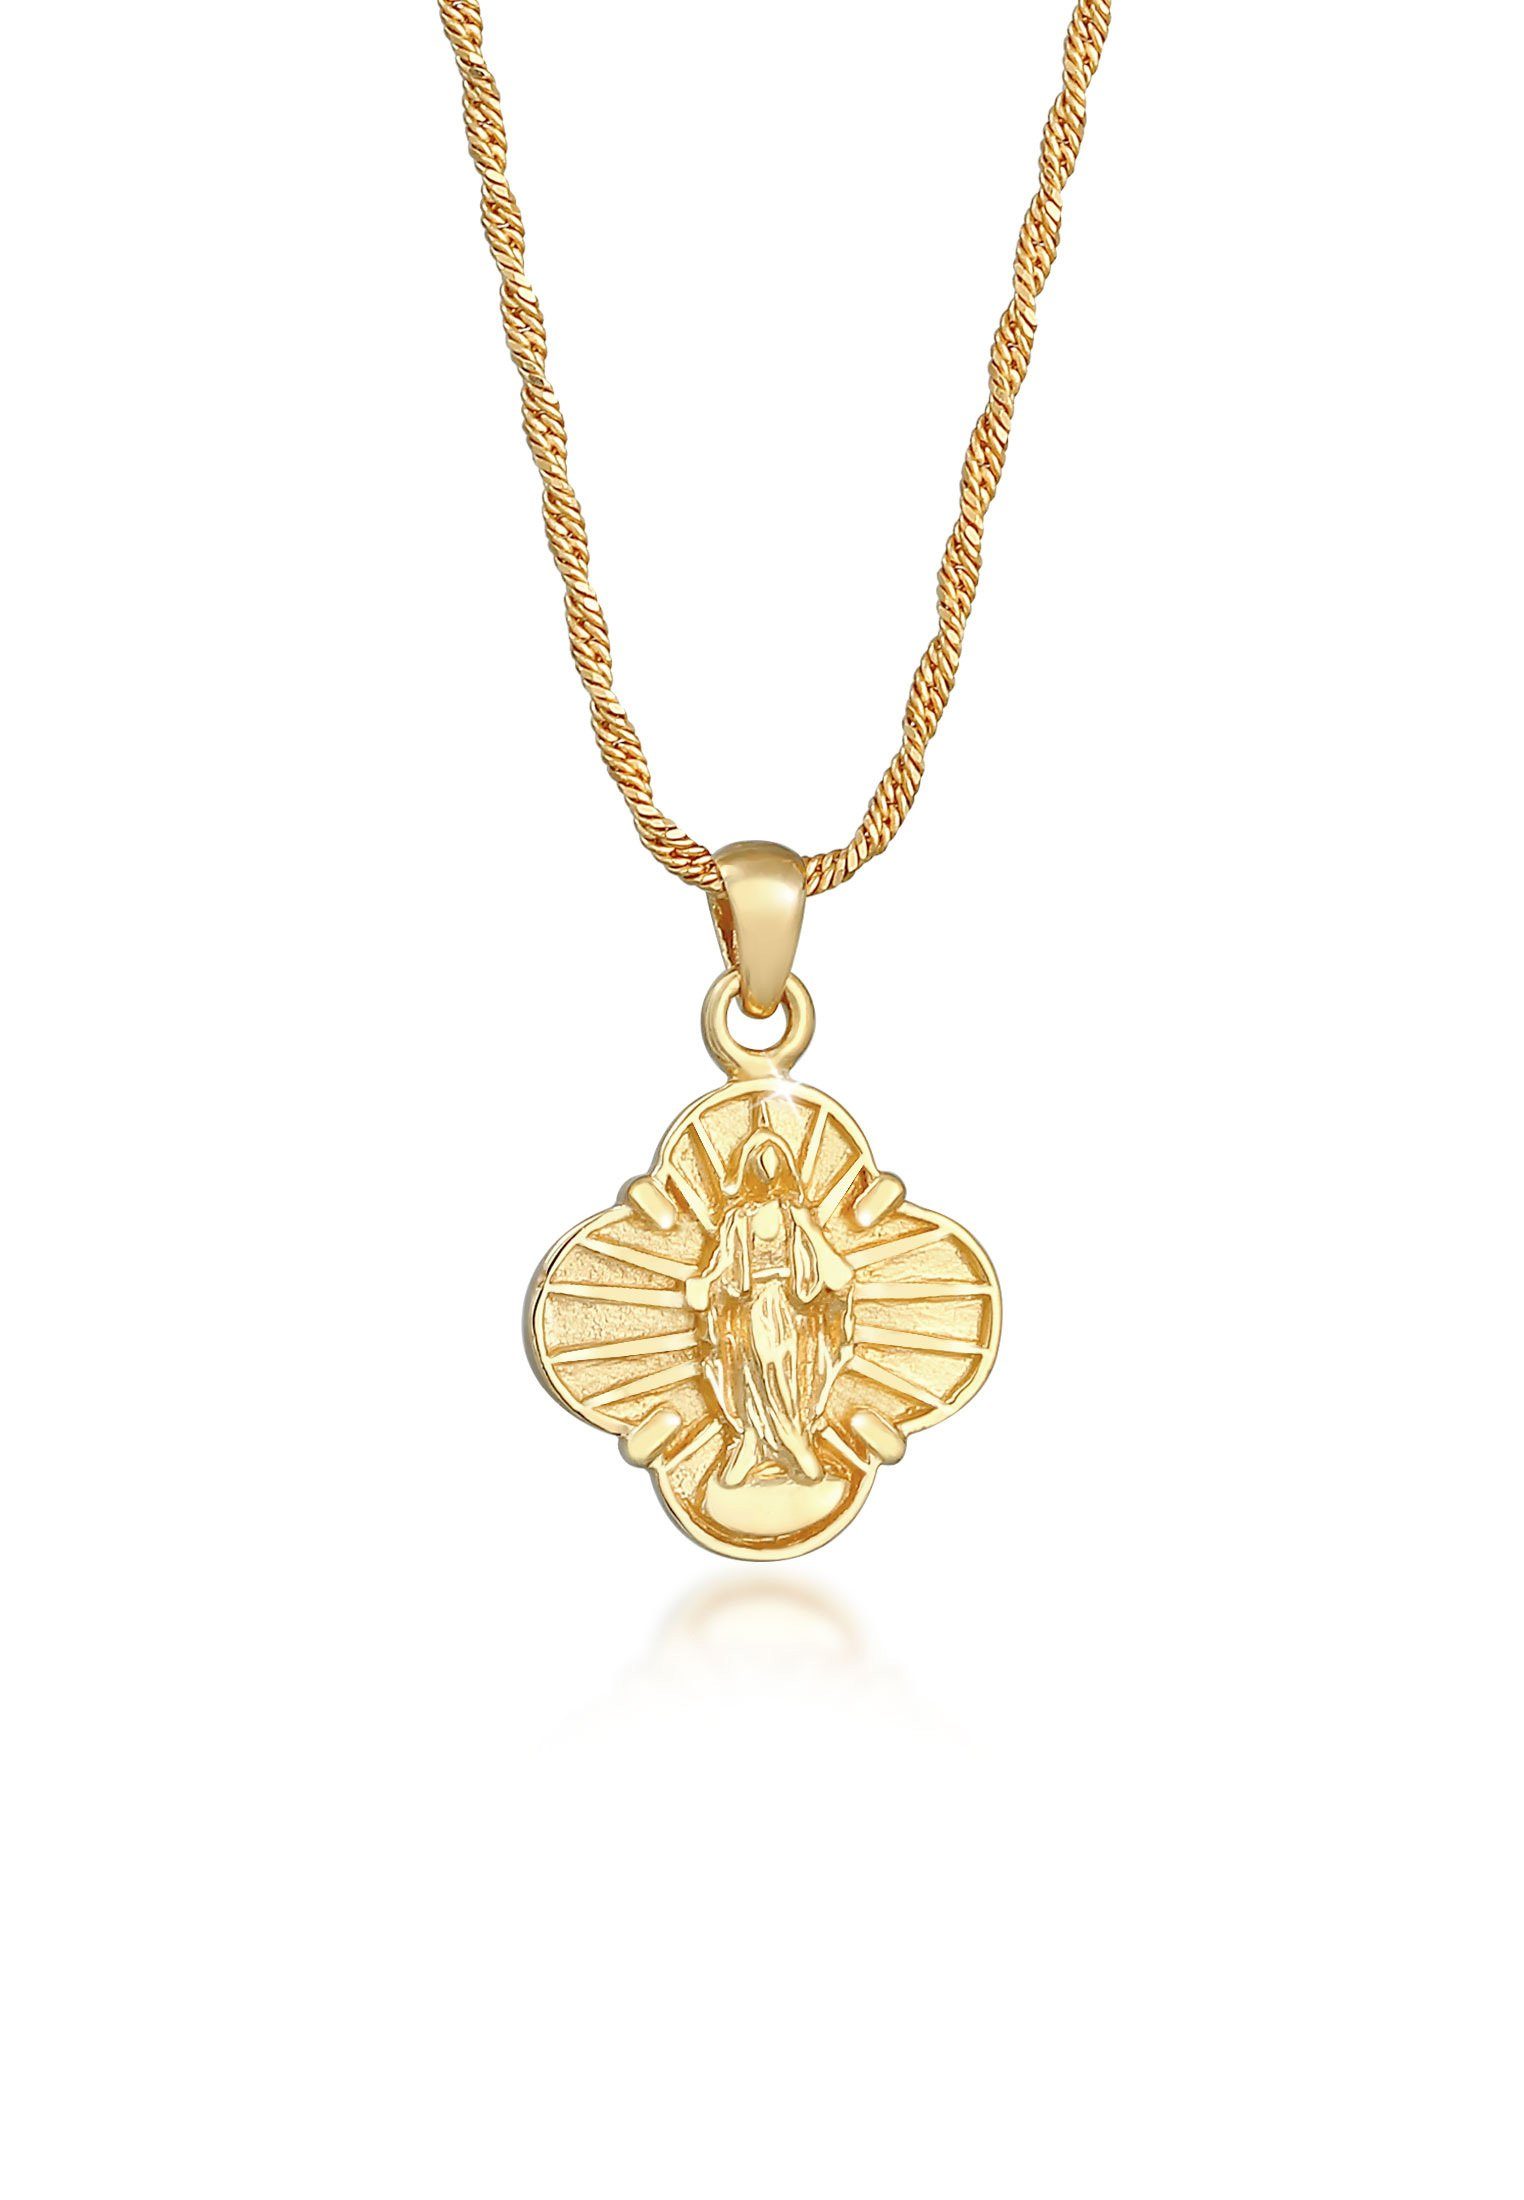 Jungfrau Gold mit Kreuz Kette Silber, Anhänger Glaube Maria Elli 925 Religion Marienbild